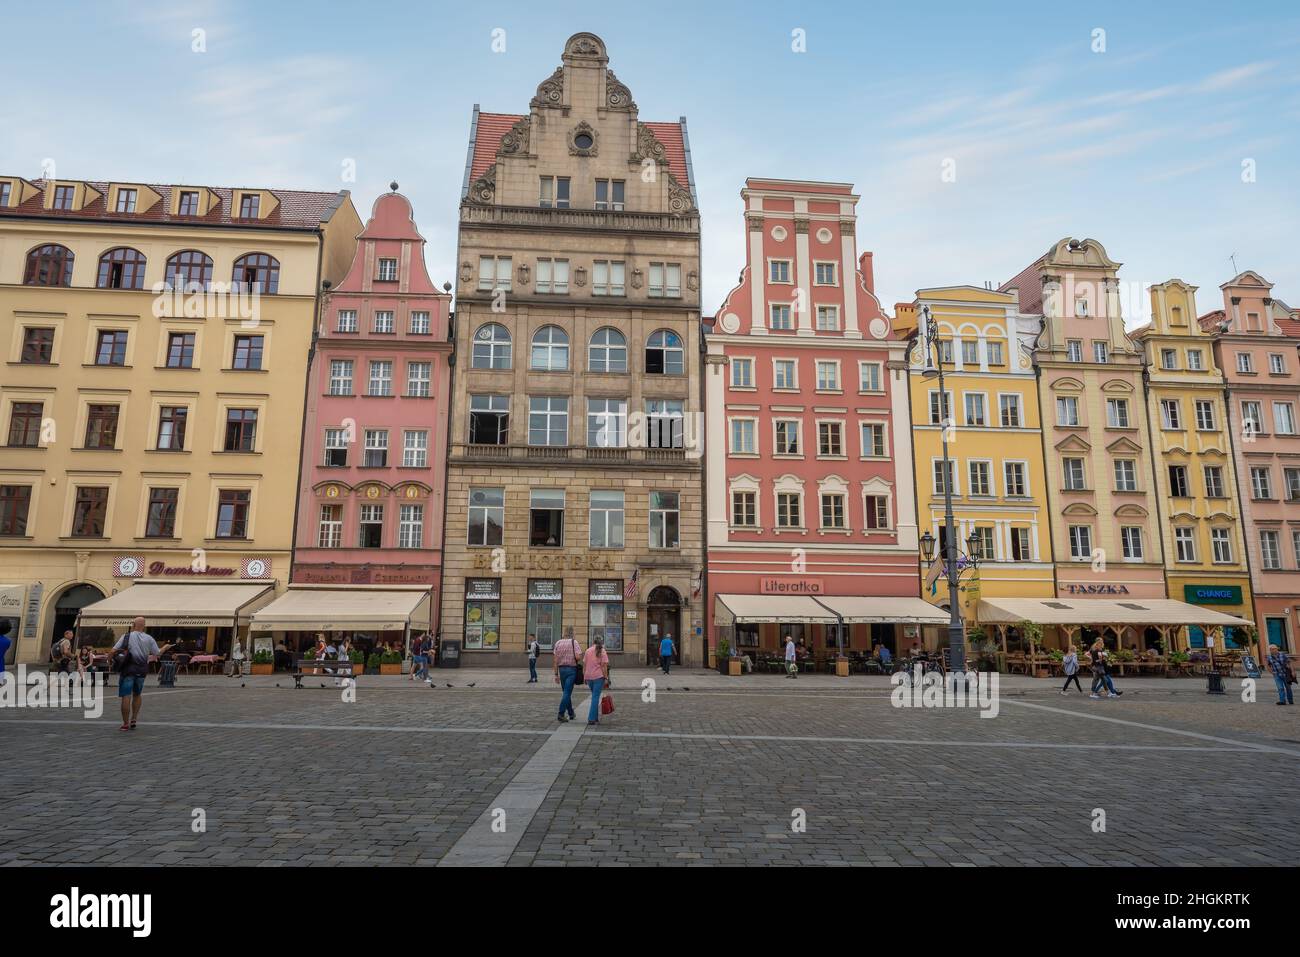 La ville colorée abrite des bâtiments et des restaurants sur la place du marché (place Rynek) - Wroclaw, Pologne Banque D'Images